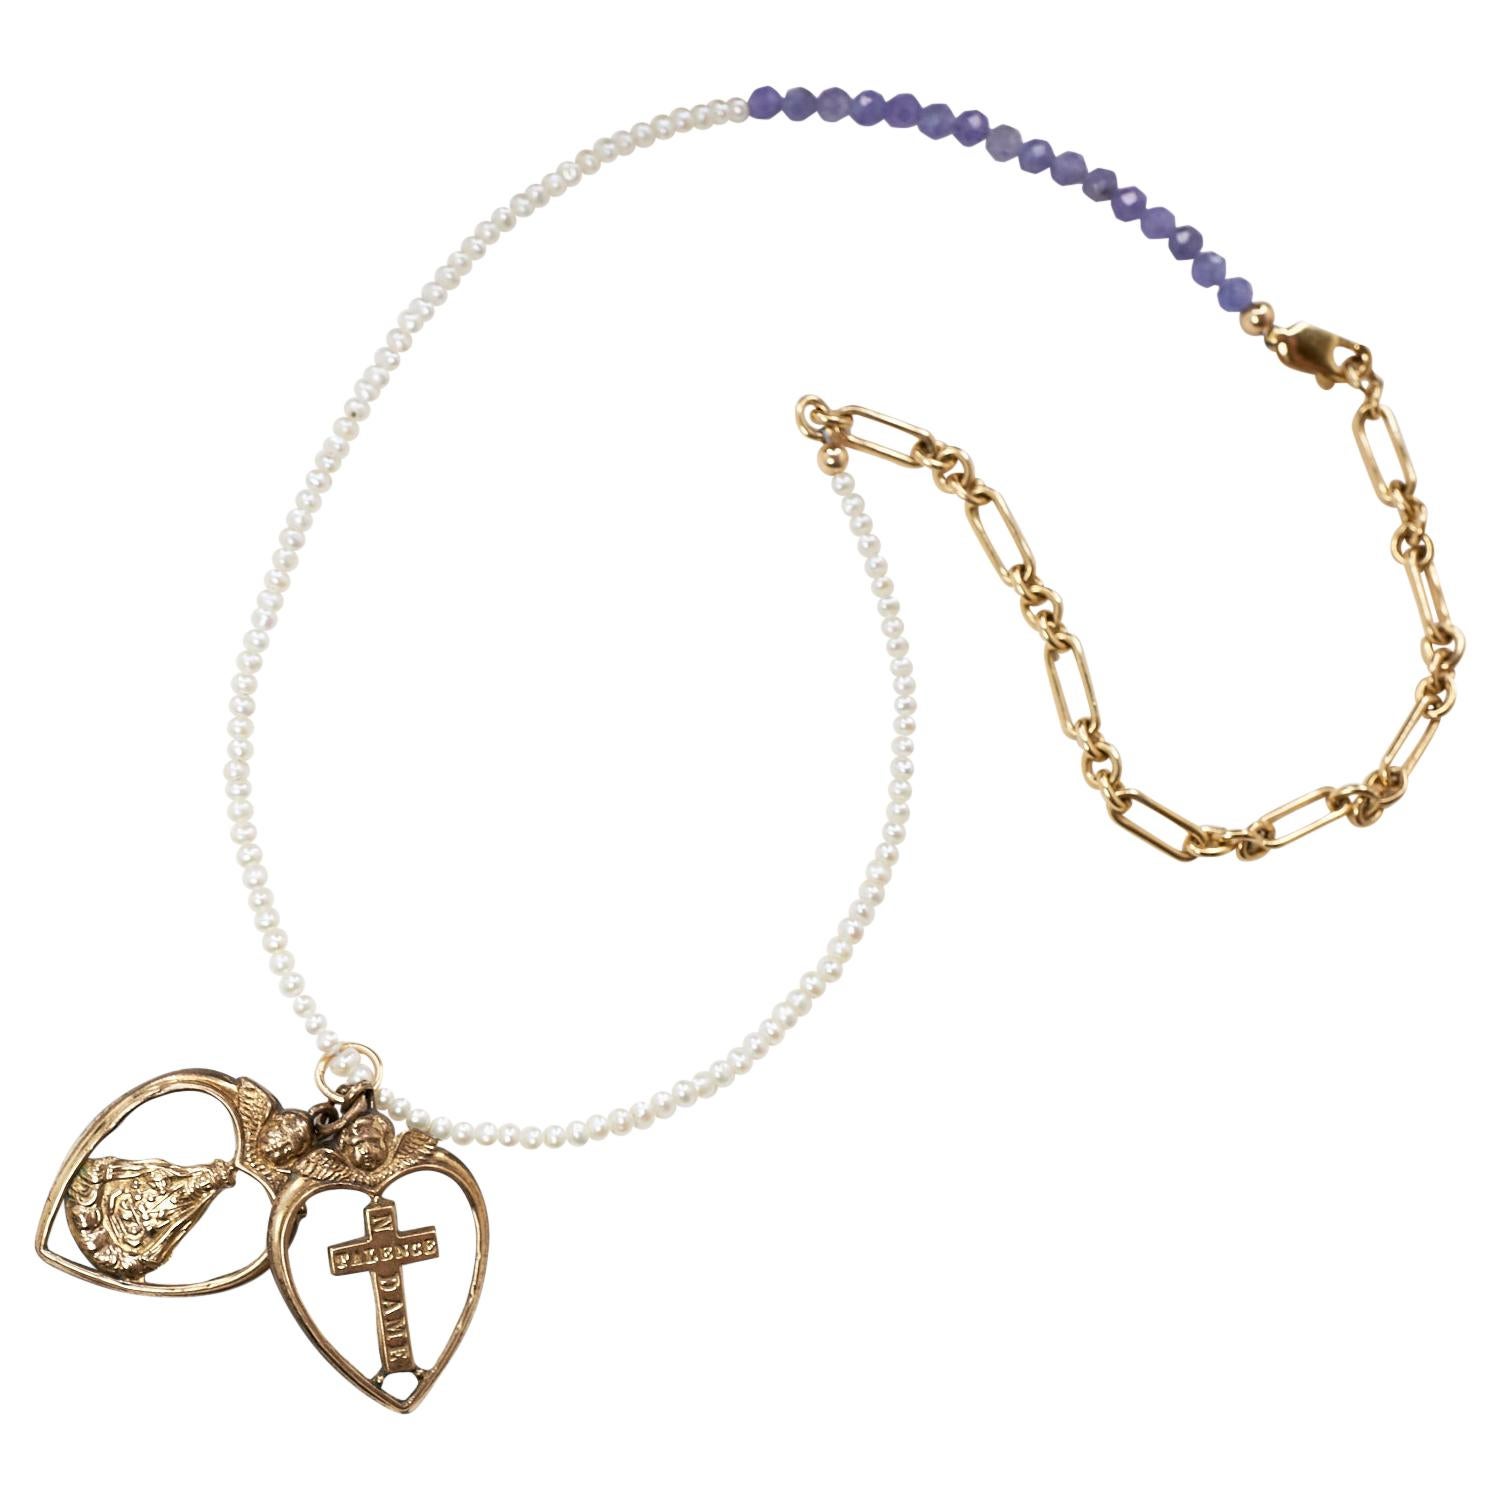 Herz-Engel-Kreuz-Anhänger Weiß Perle Tansanit Halskette Choker J DAUPHIN
Länge: 16